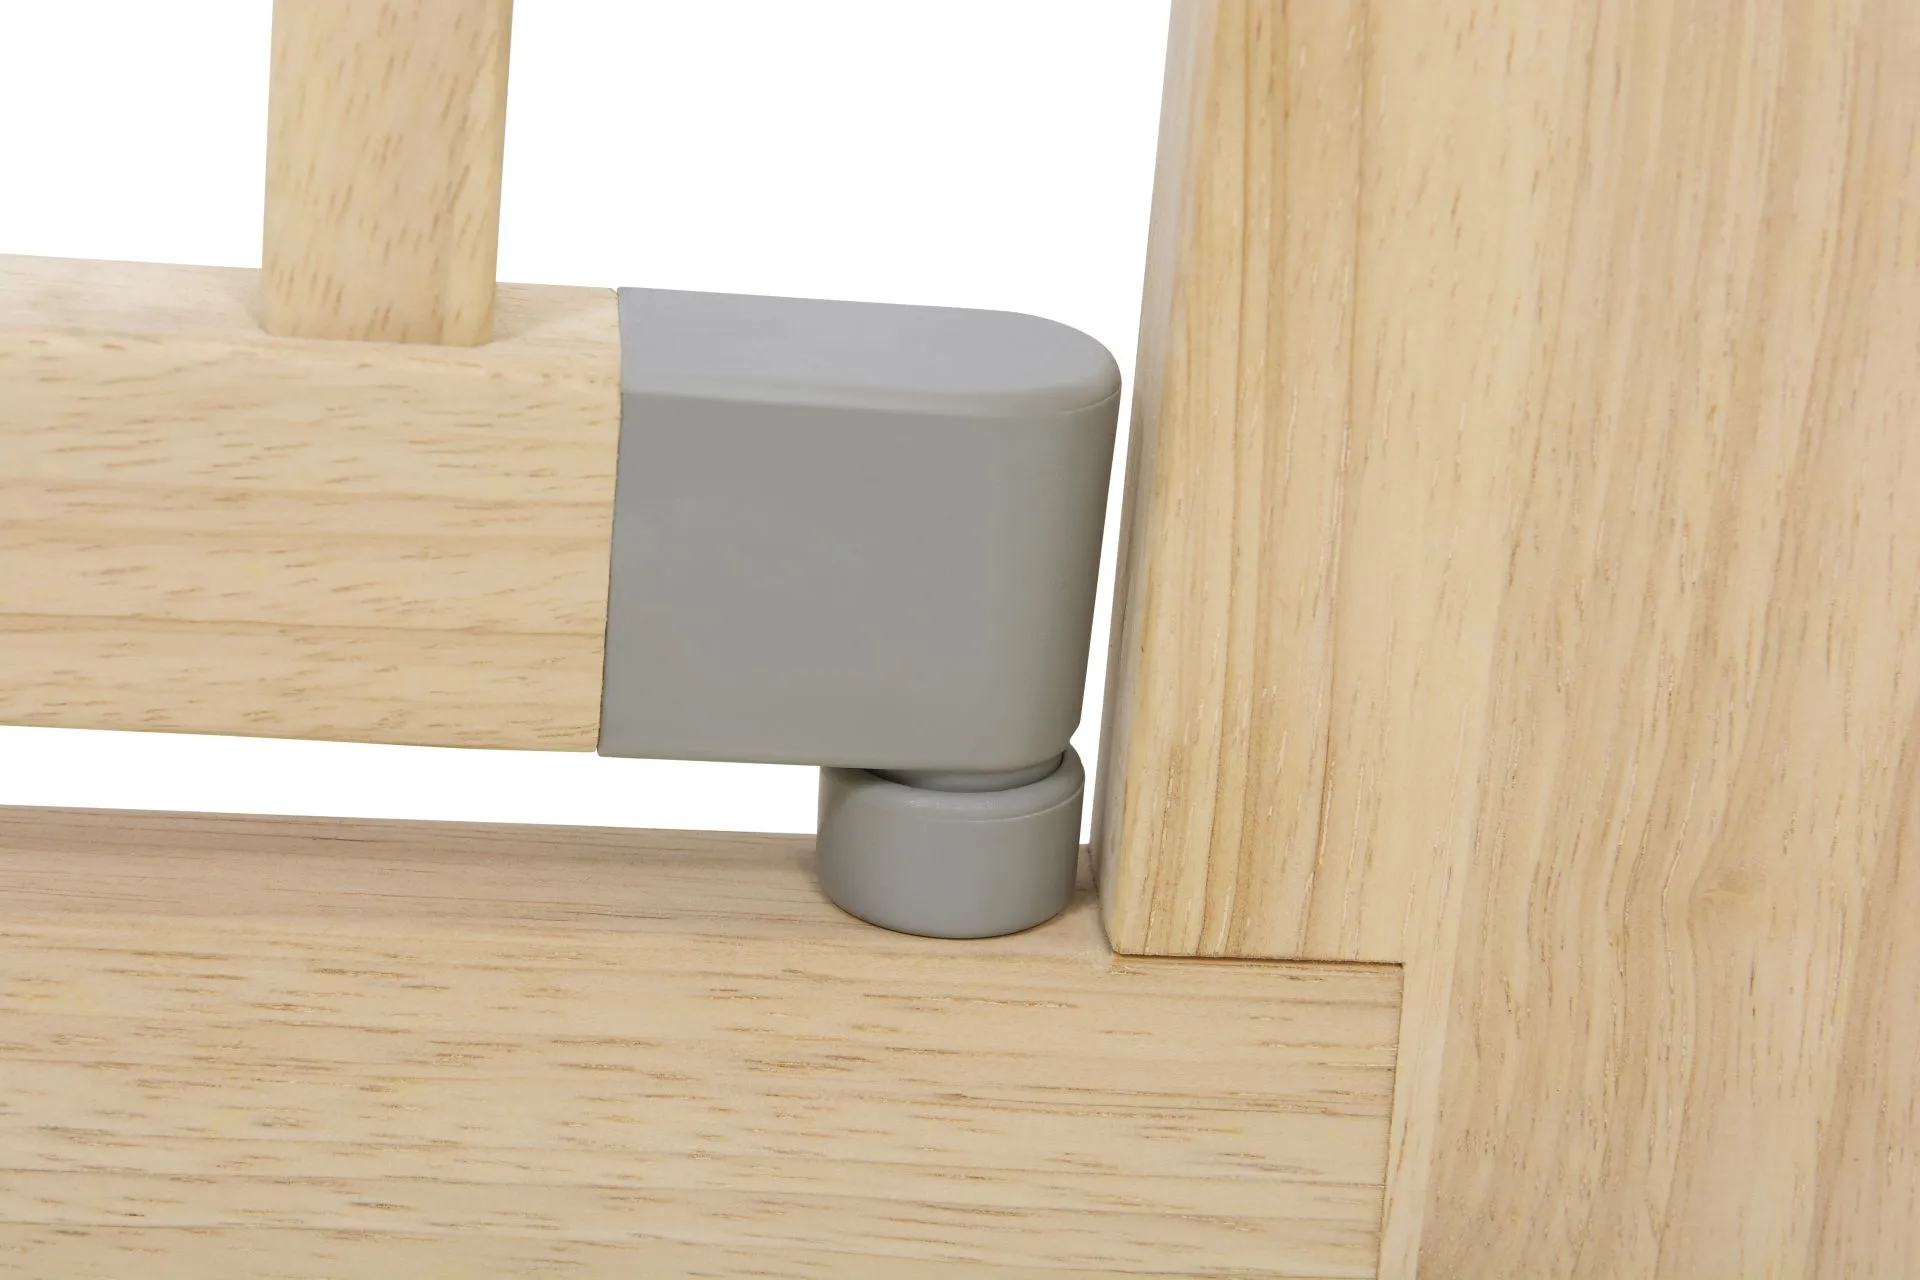 Türschutzgitter 2712 zum Klemmen. für Öffnungen von 73.5-97 cm. aus Holz